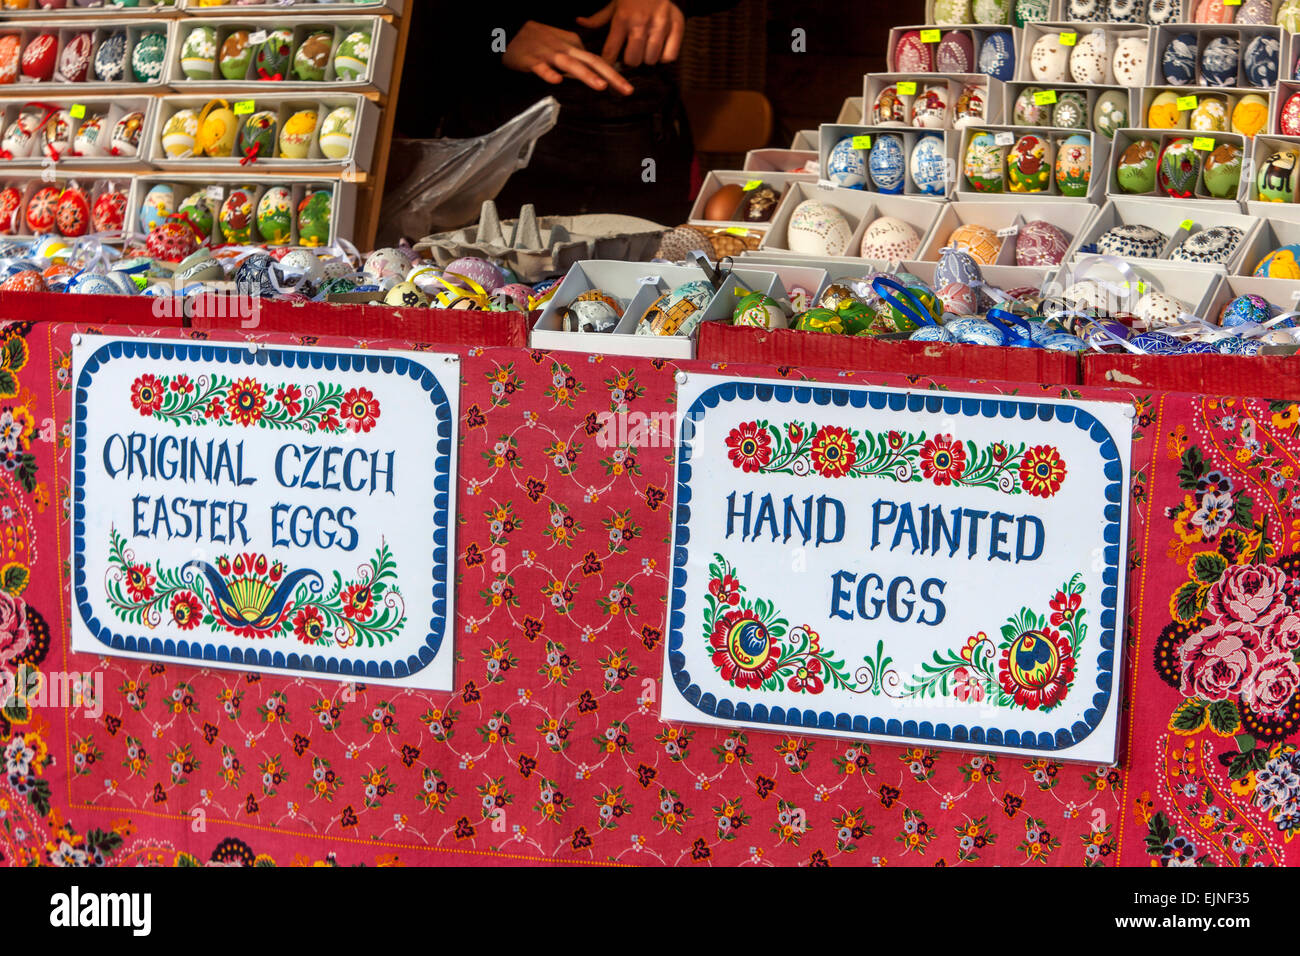 Originale negozio di uova di Pasqua di Praga, uova dipinte A Mano, Piazza della Città Vecchia mercato di Praga Repubblica Ceca, Europa Foto Stock